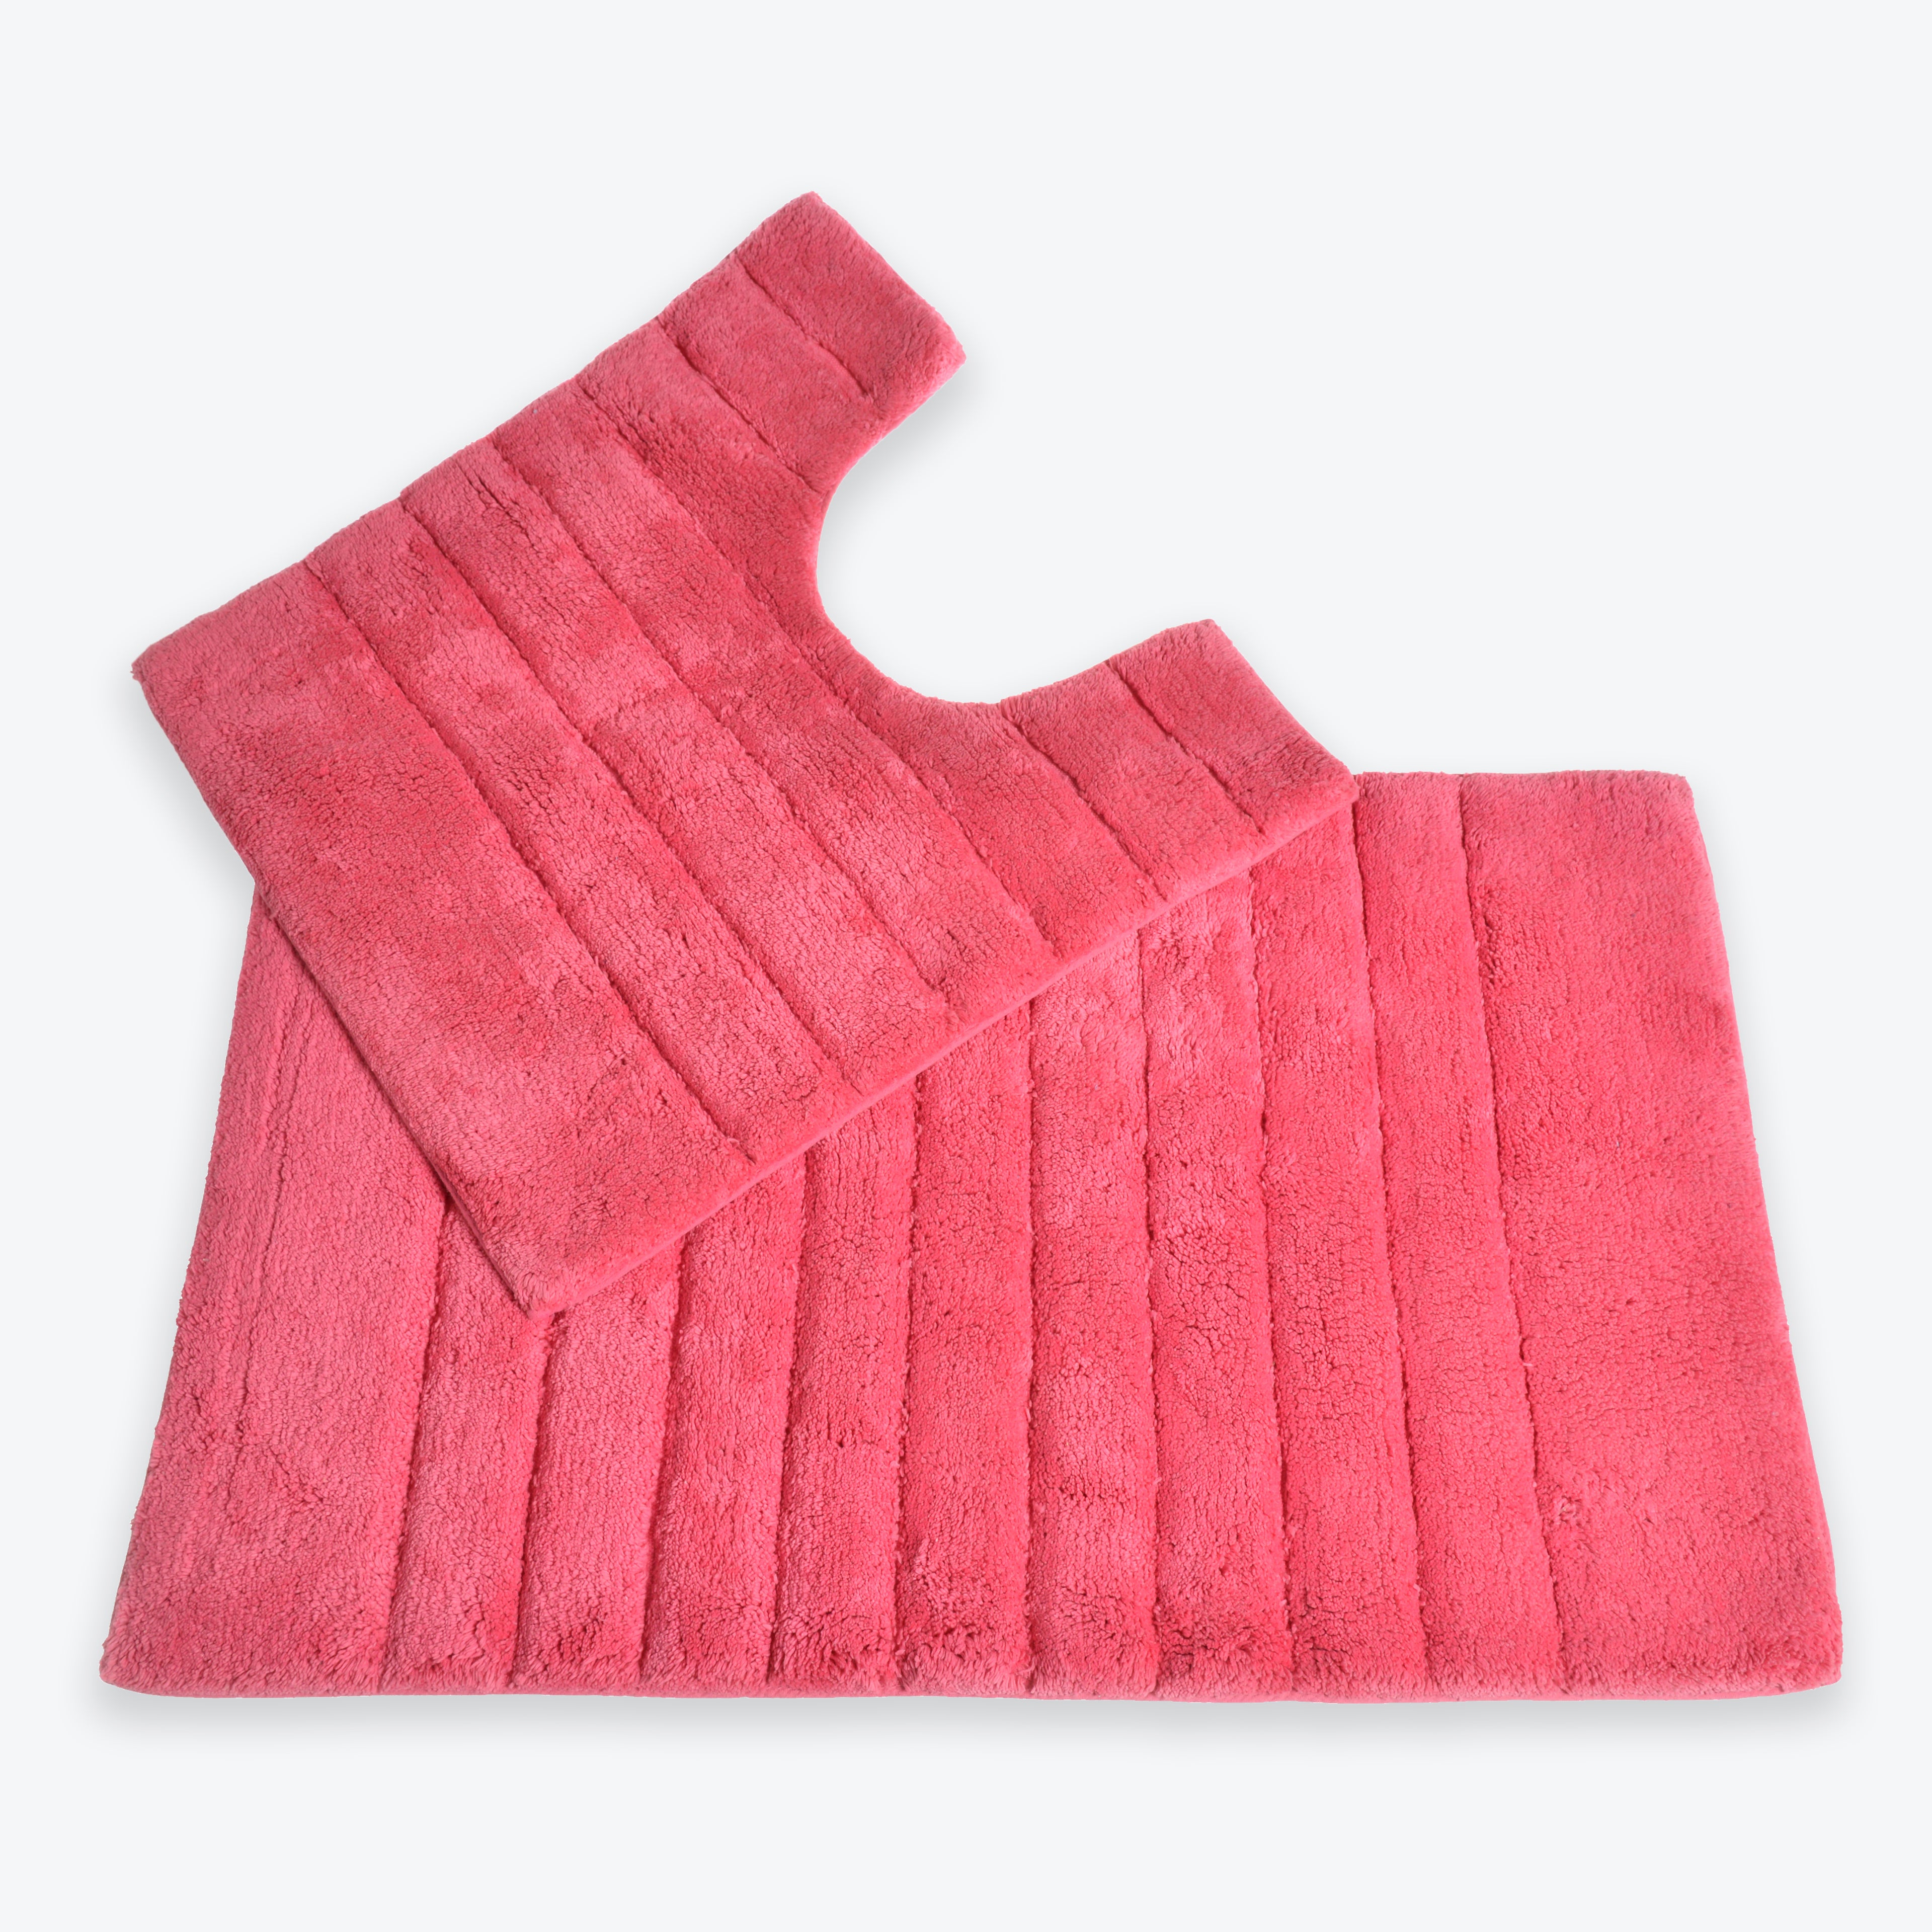 Hot Pink Bathroom Set - 2pc Bath Mat and Pedestal Mat